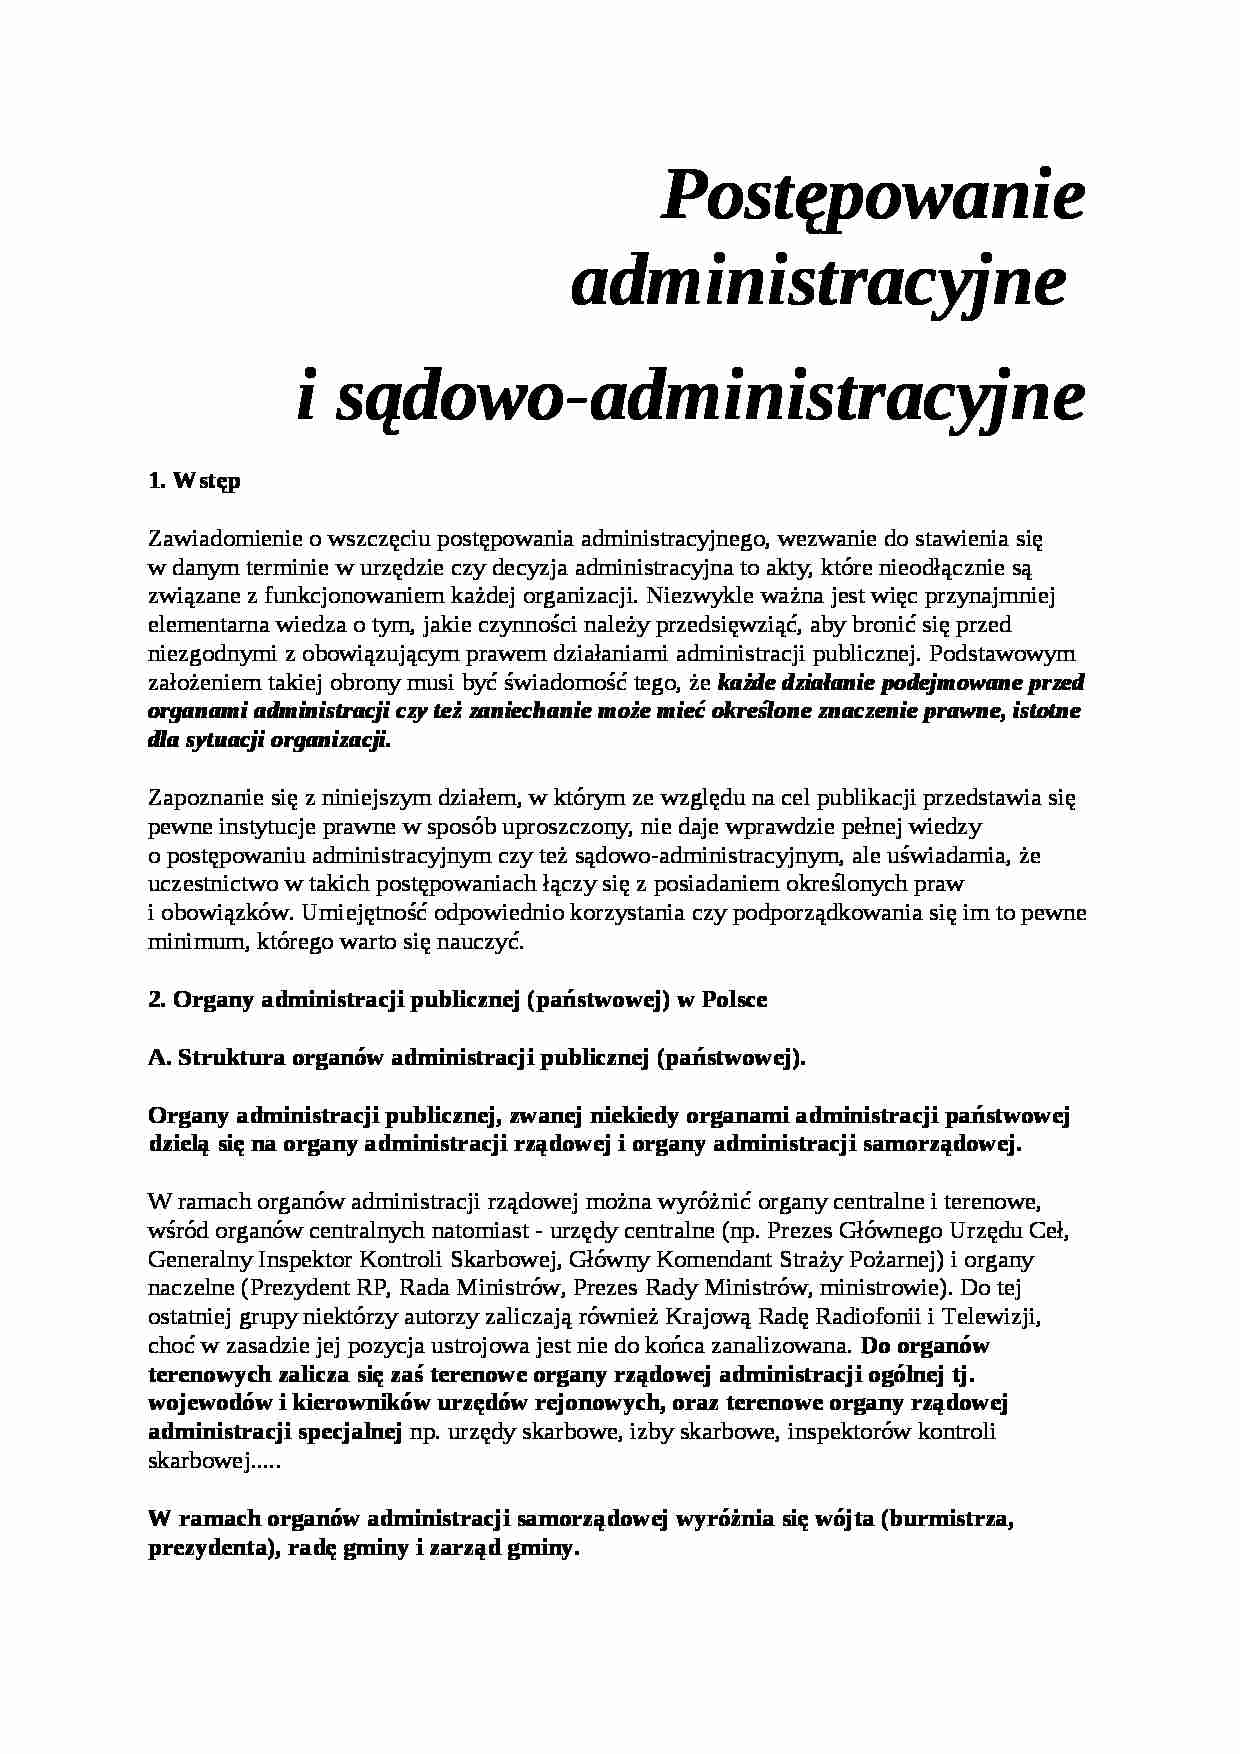 Postępowanie administracyjne i sądowoadministracyjne - strona 1